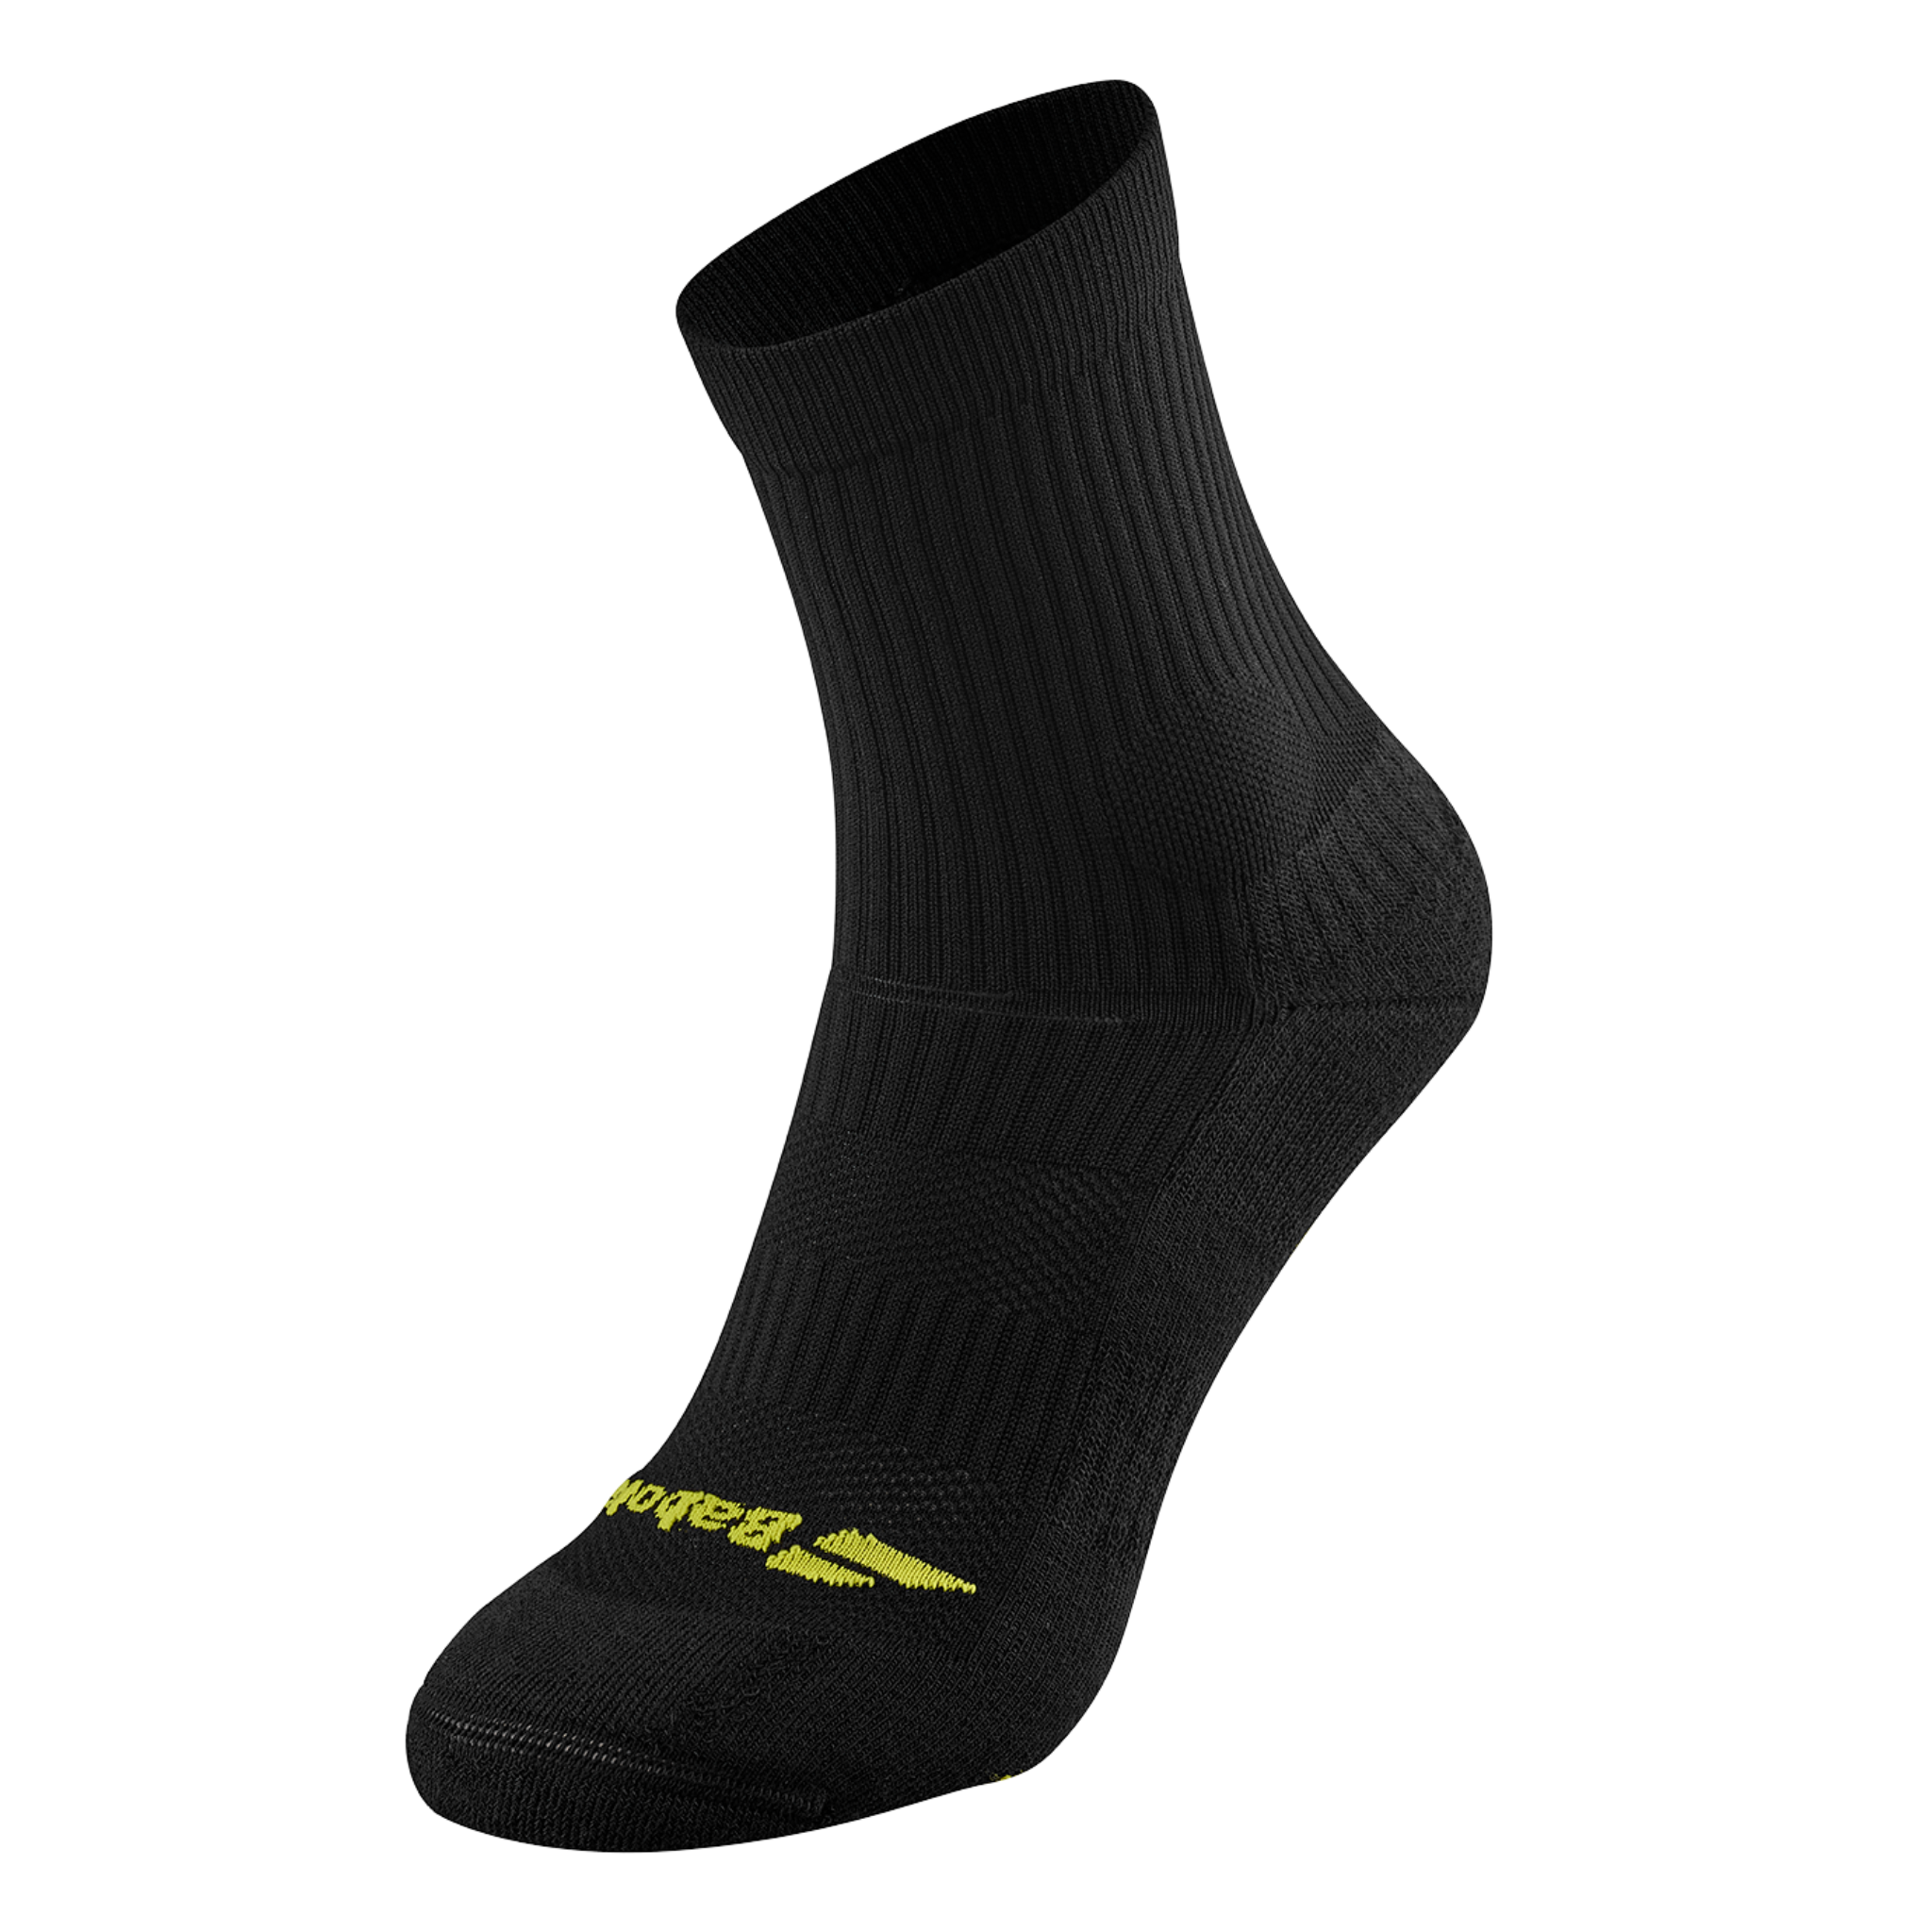 Babolat Pro 360 Tennis Socks (Black/Aero)